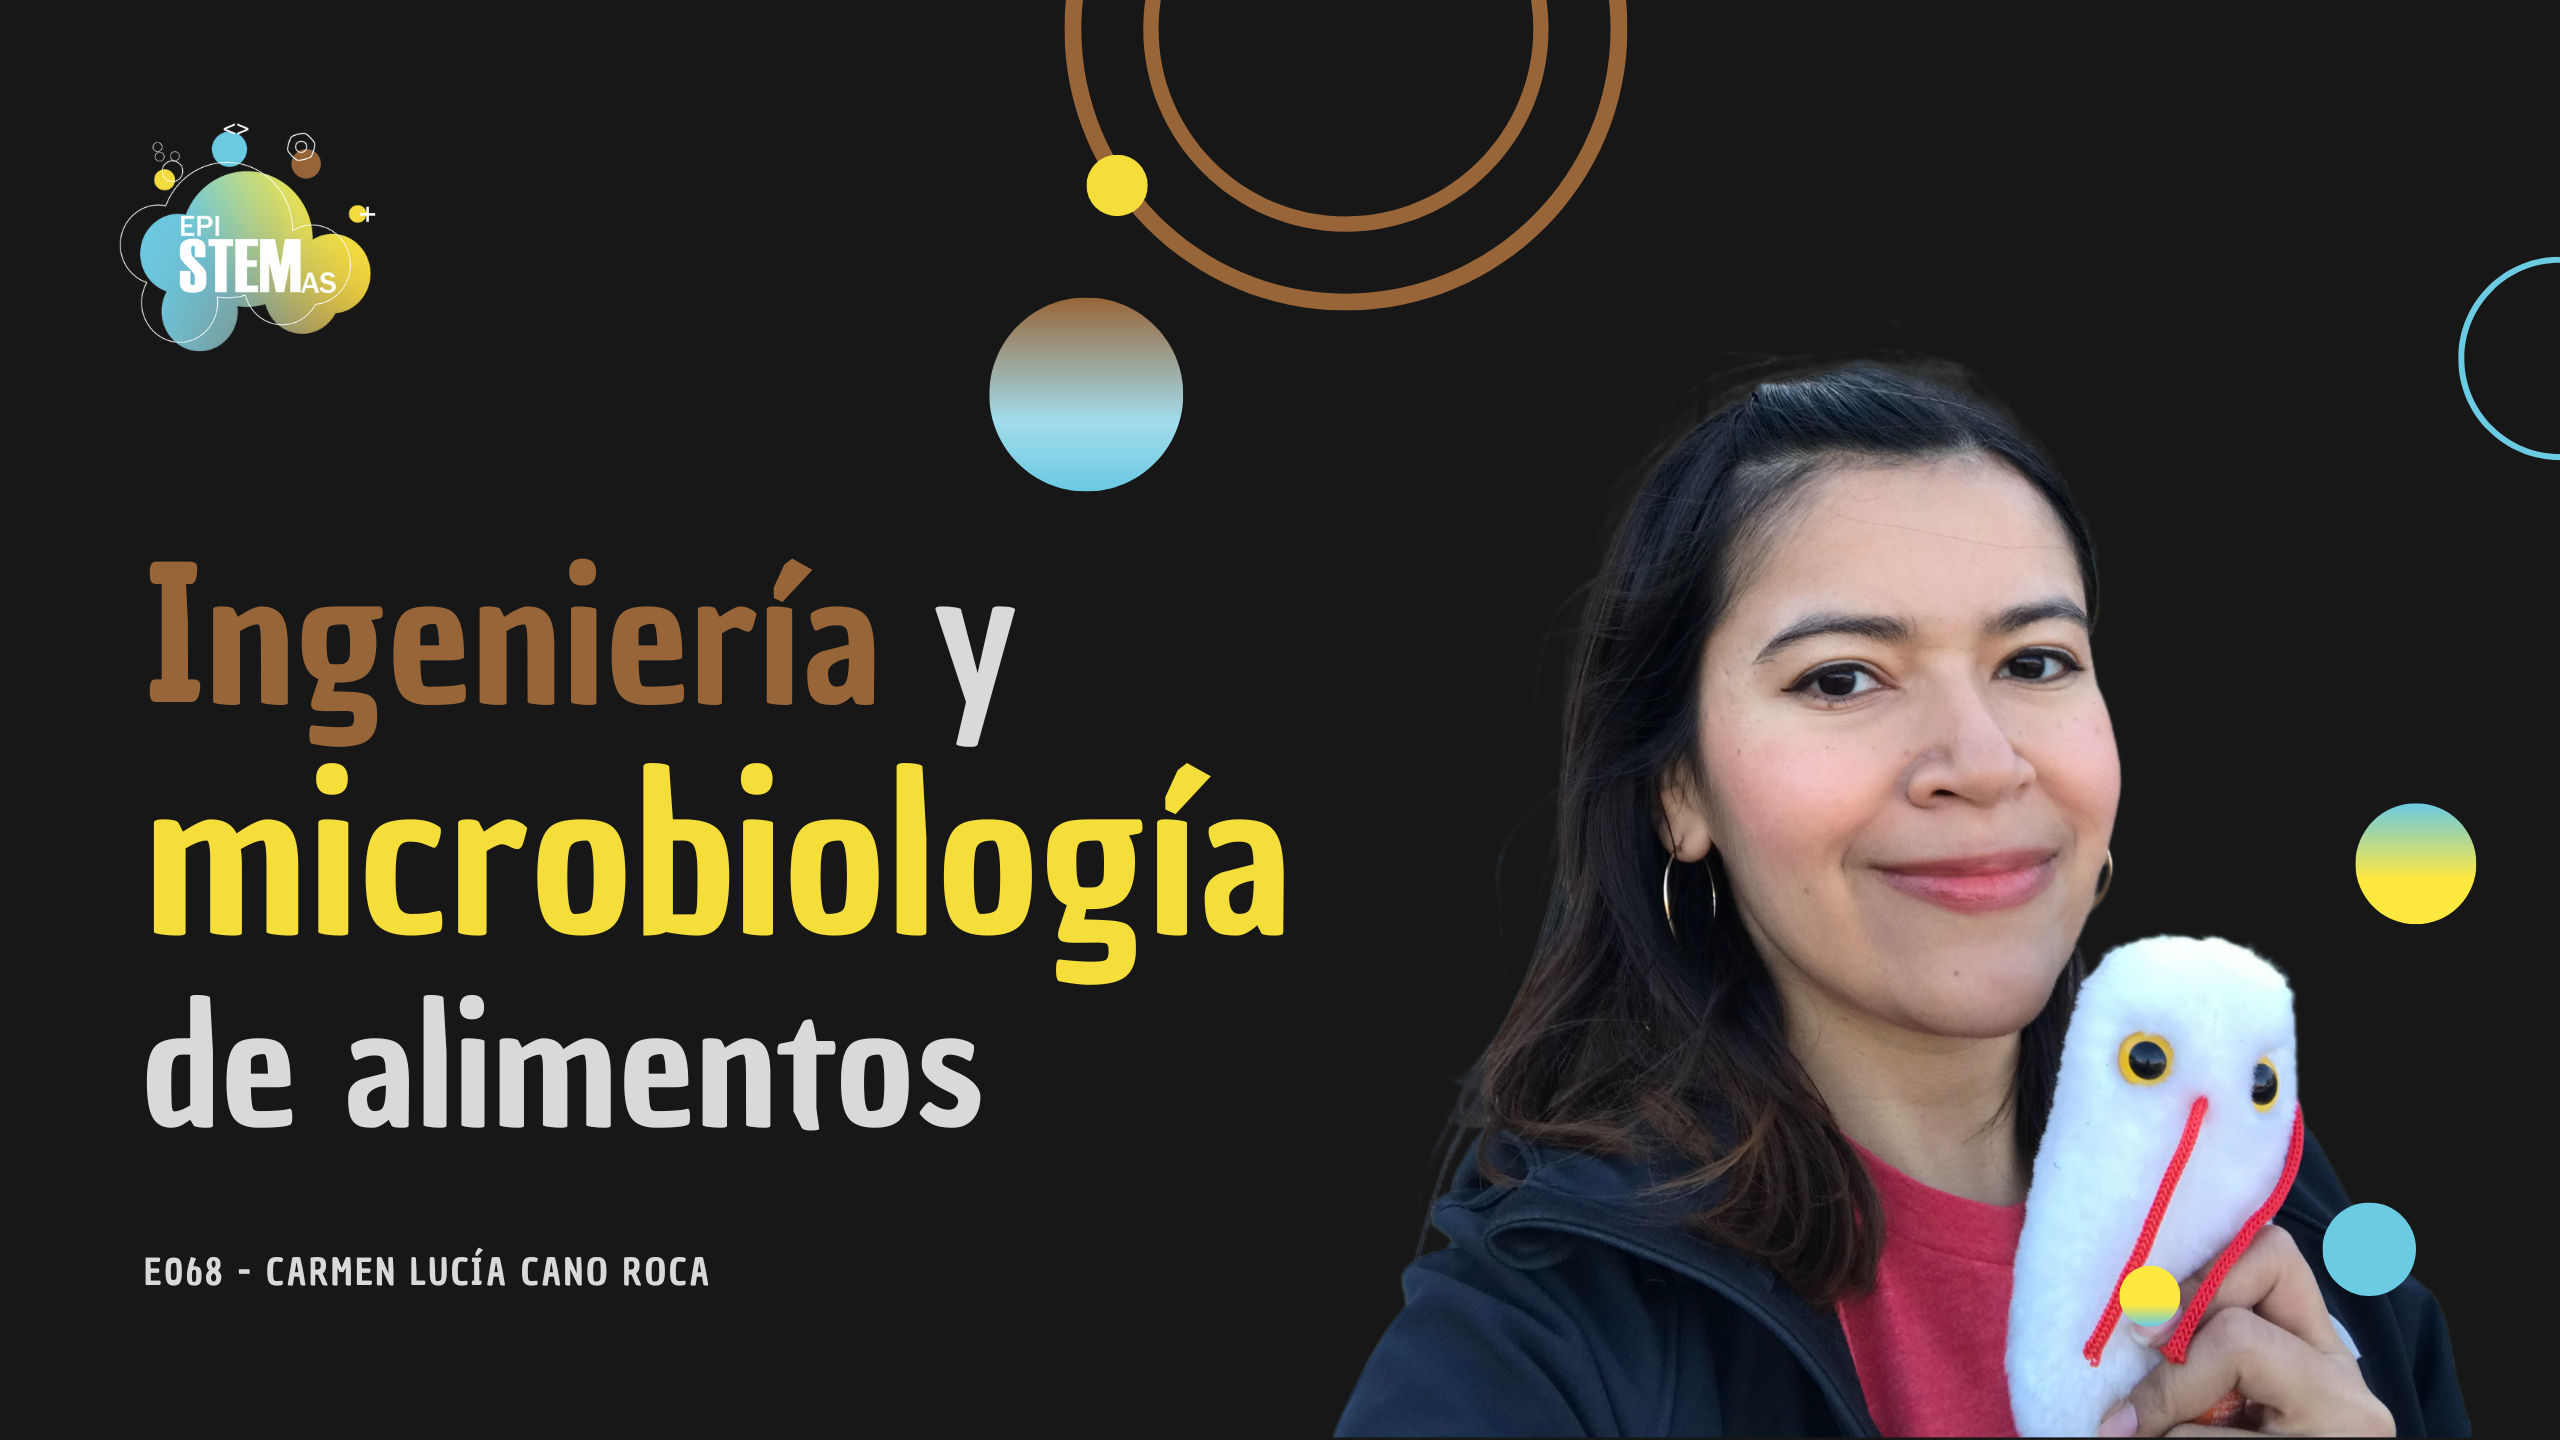 Ingeniería y microbiología de alimentos